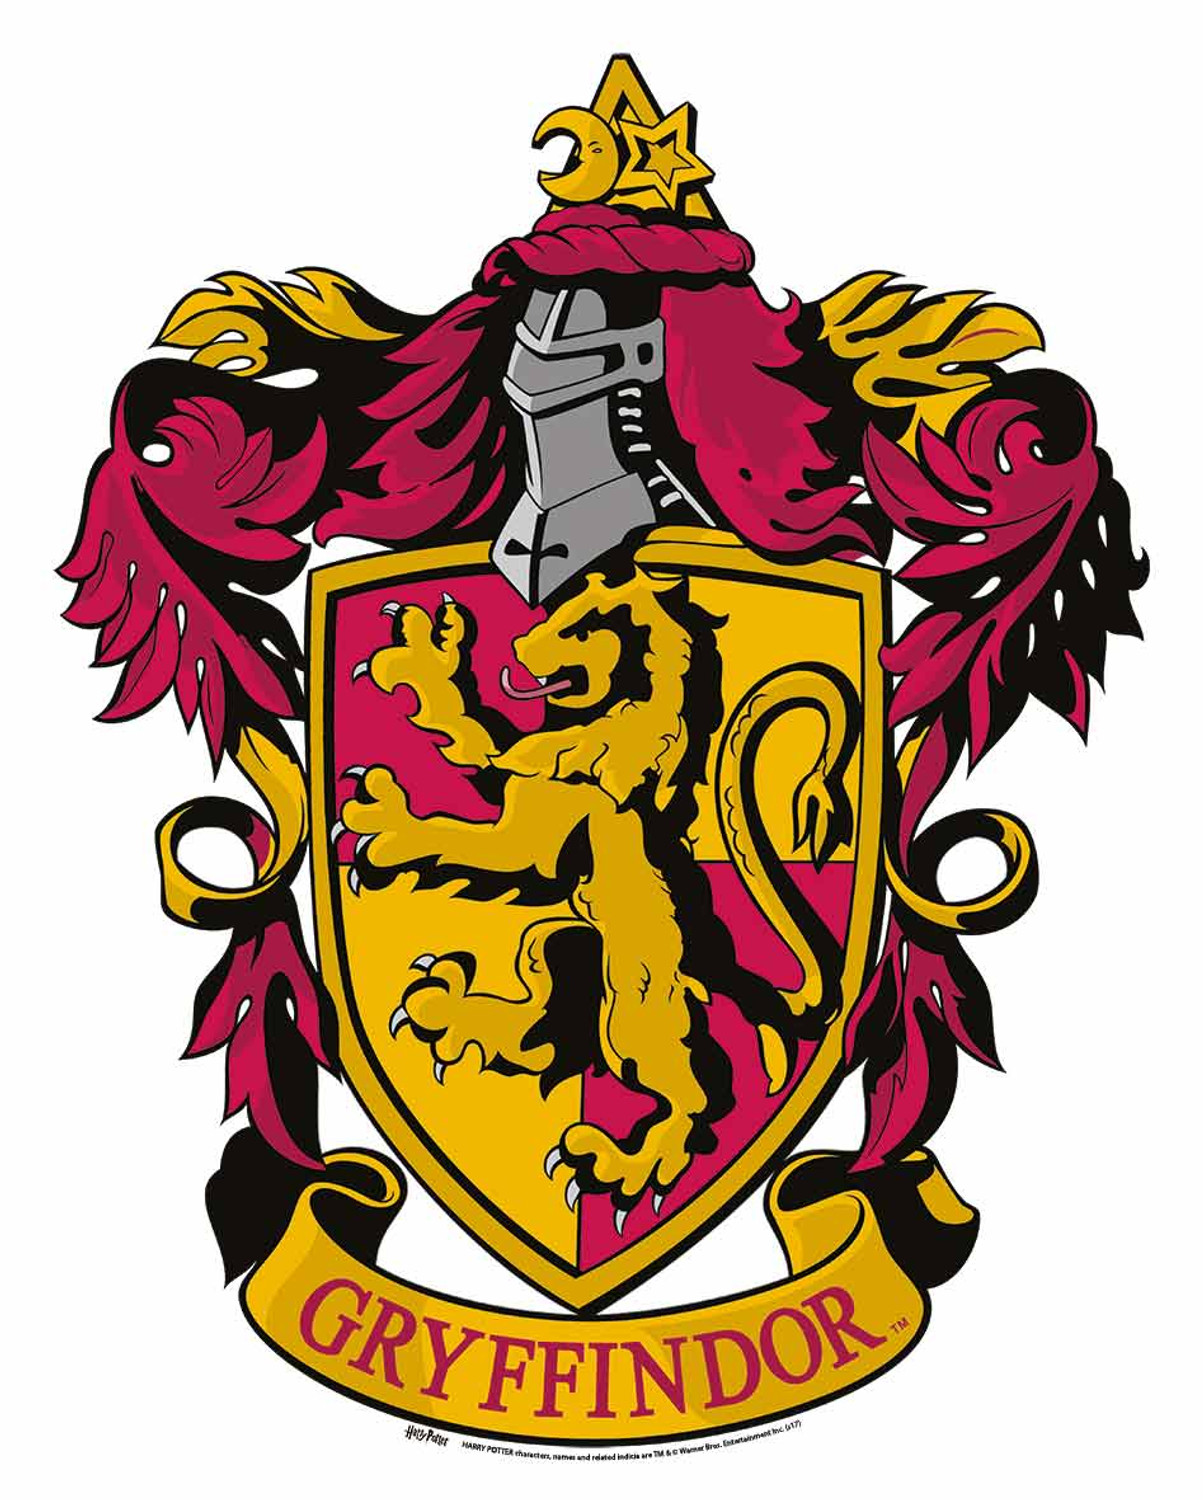 HD wallpaper: Gryffindor logo, Harry Potter, broom, Snitch, illustration,  backgrounds | Wallpaper Flare